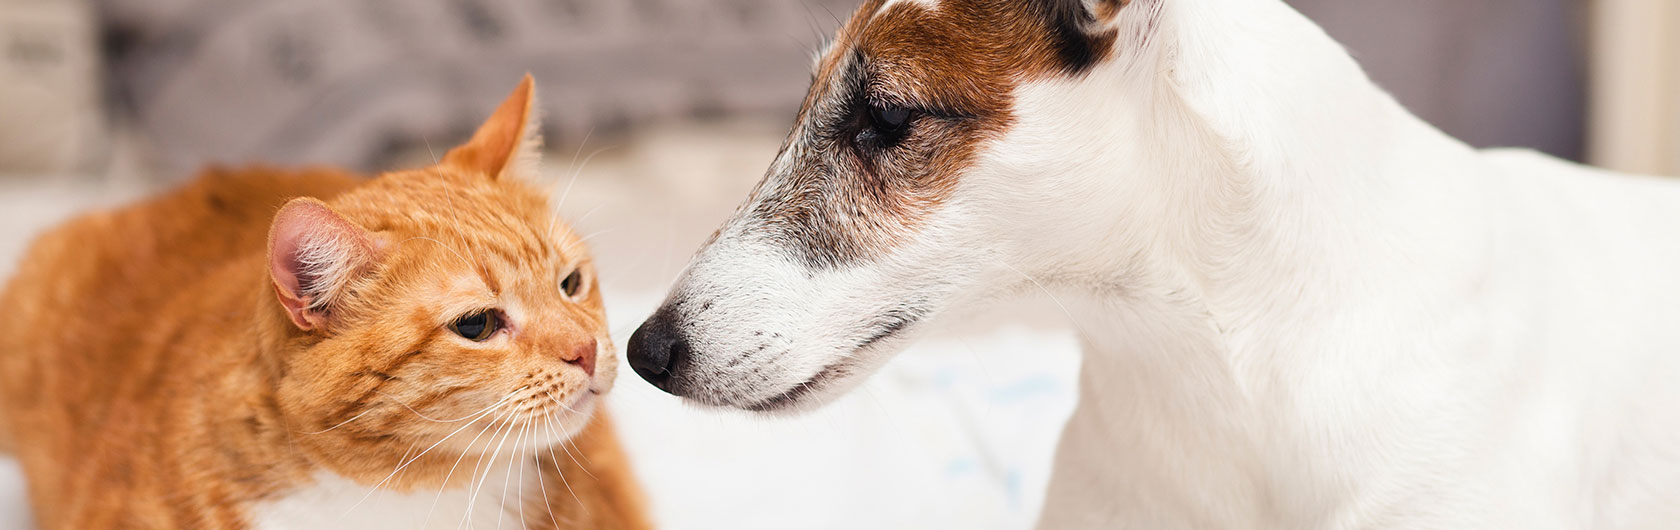 convivencia de gatos y perros en la misma casa y alimento para perros y alimento para gatos de calidad nutribon